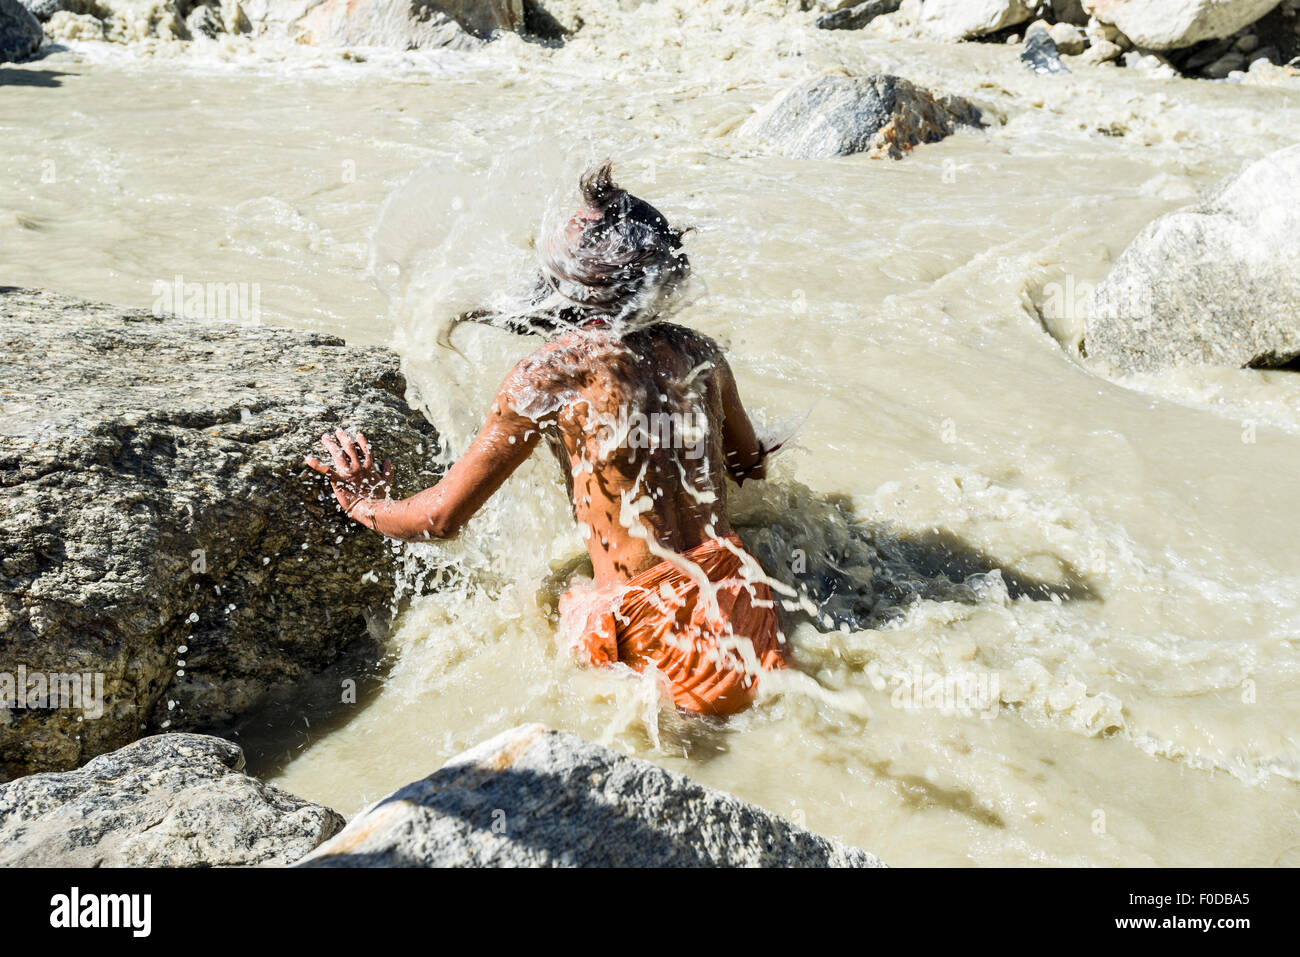 Un Sadhu, saint homme, prend des bains dans la congélation de l'eau froide à Gaumukh, la principale source de la sainte gange, Gangotri Banque D'Images